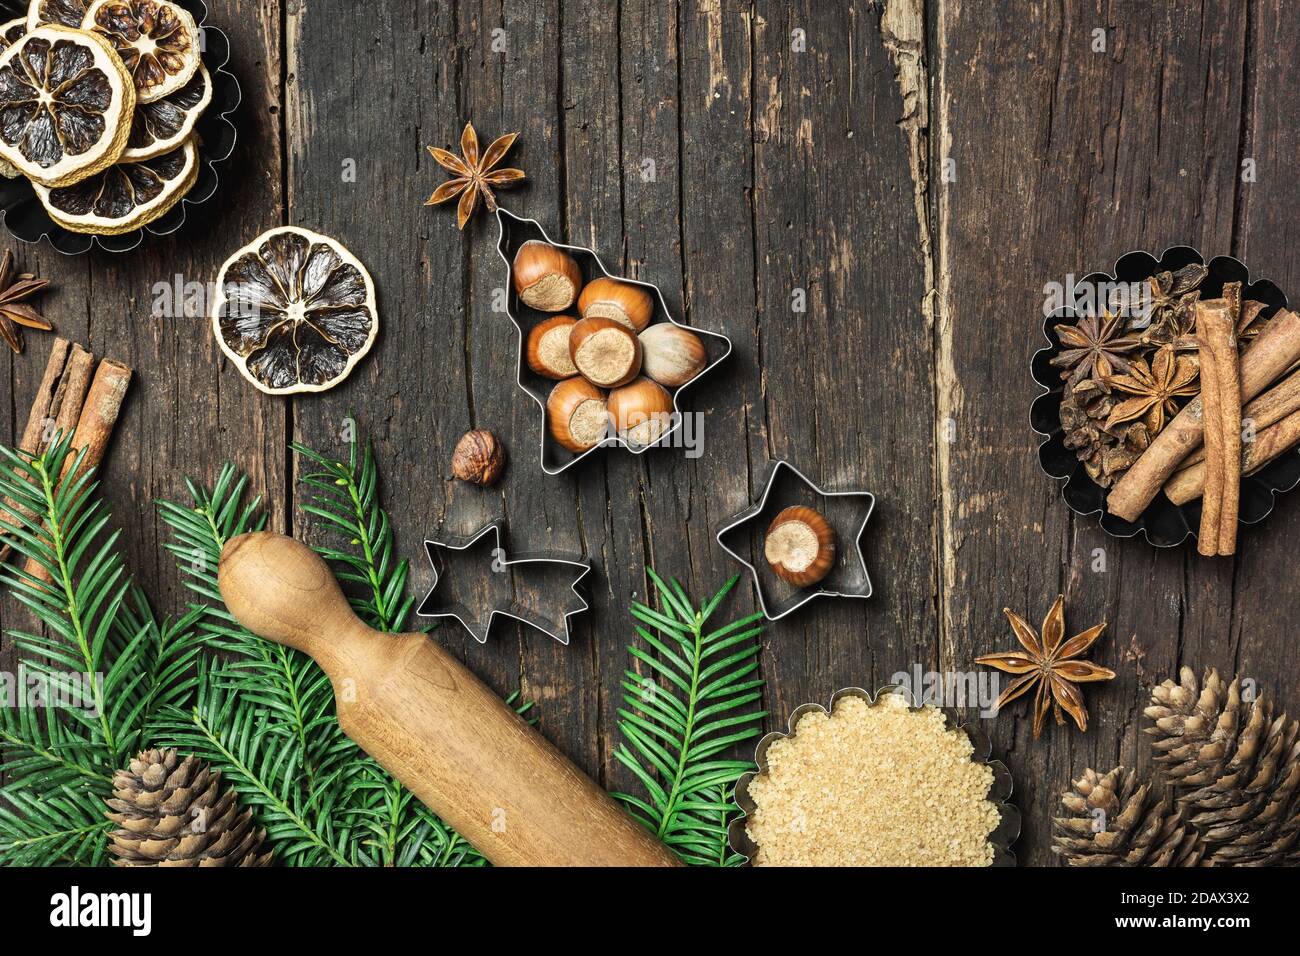 Fond de cuisson de Noël. Ingrédients pour la cuisine de Noël ou la cuisson sur une table rustique en bois. Vue de dessus avec espace de copie. Banque D'Images